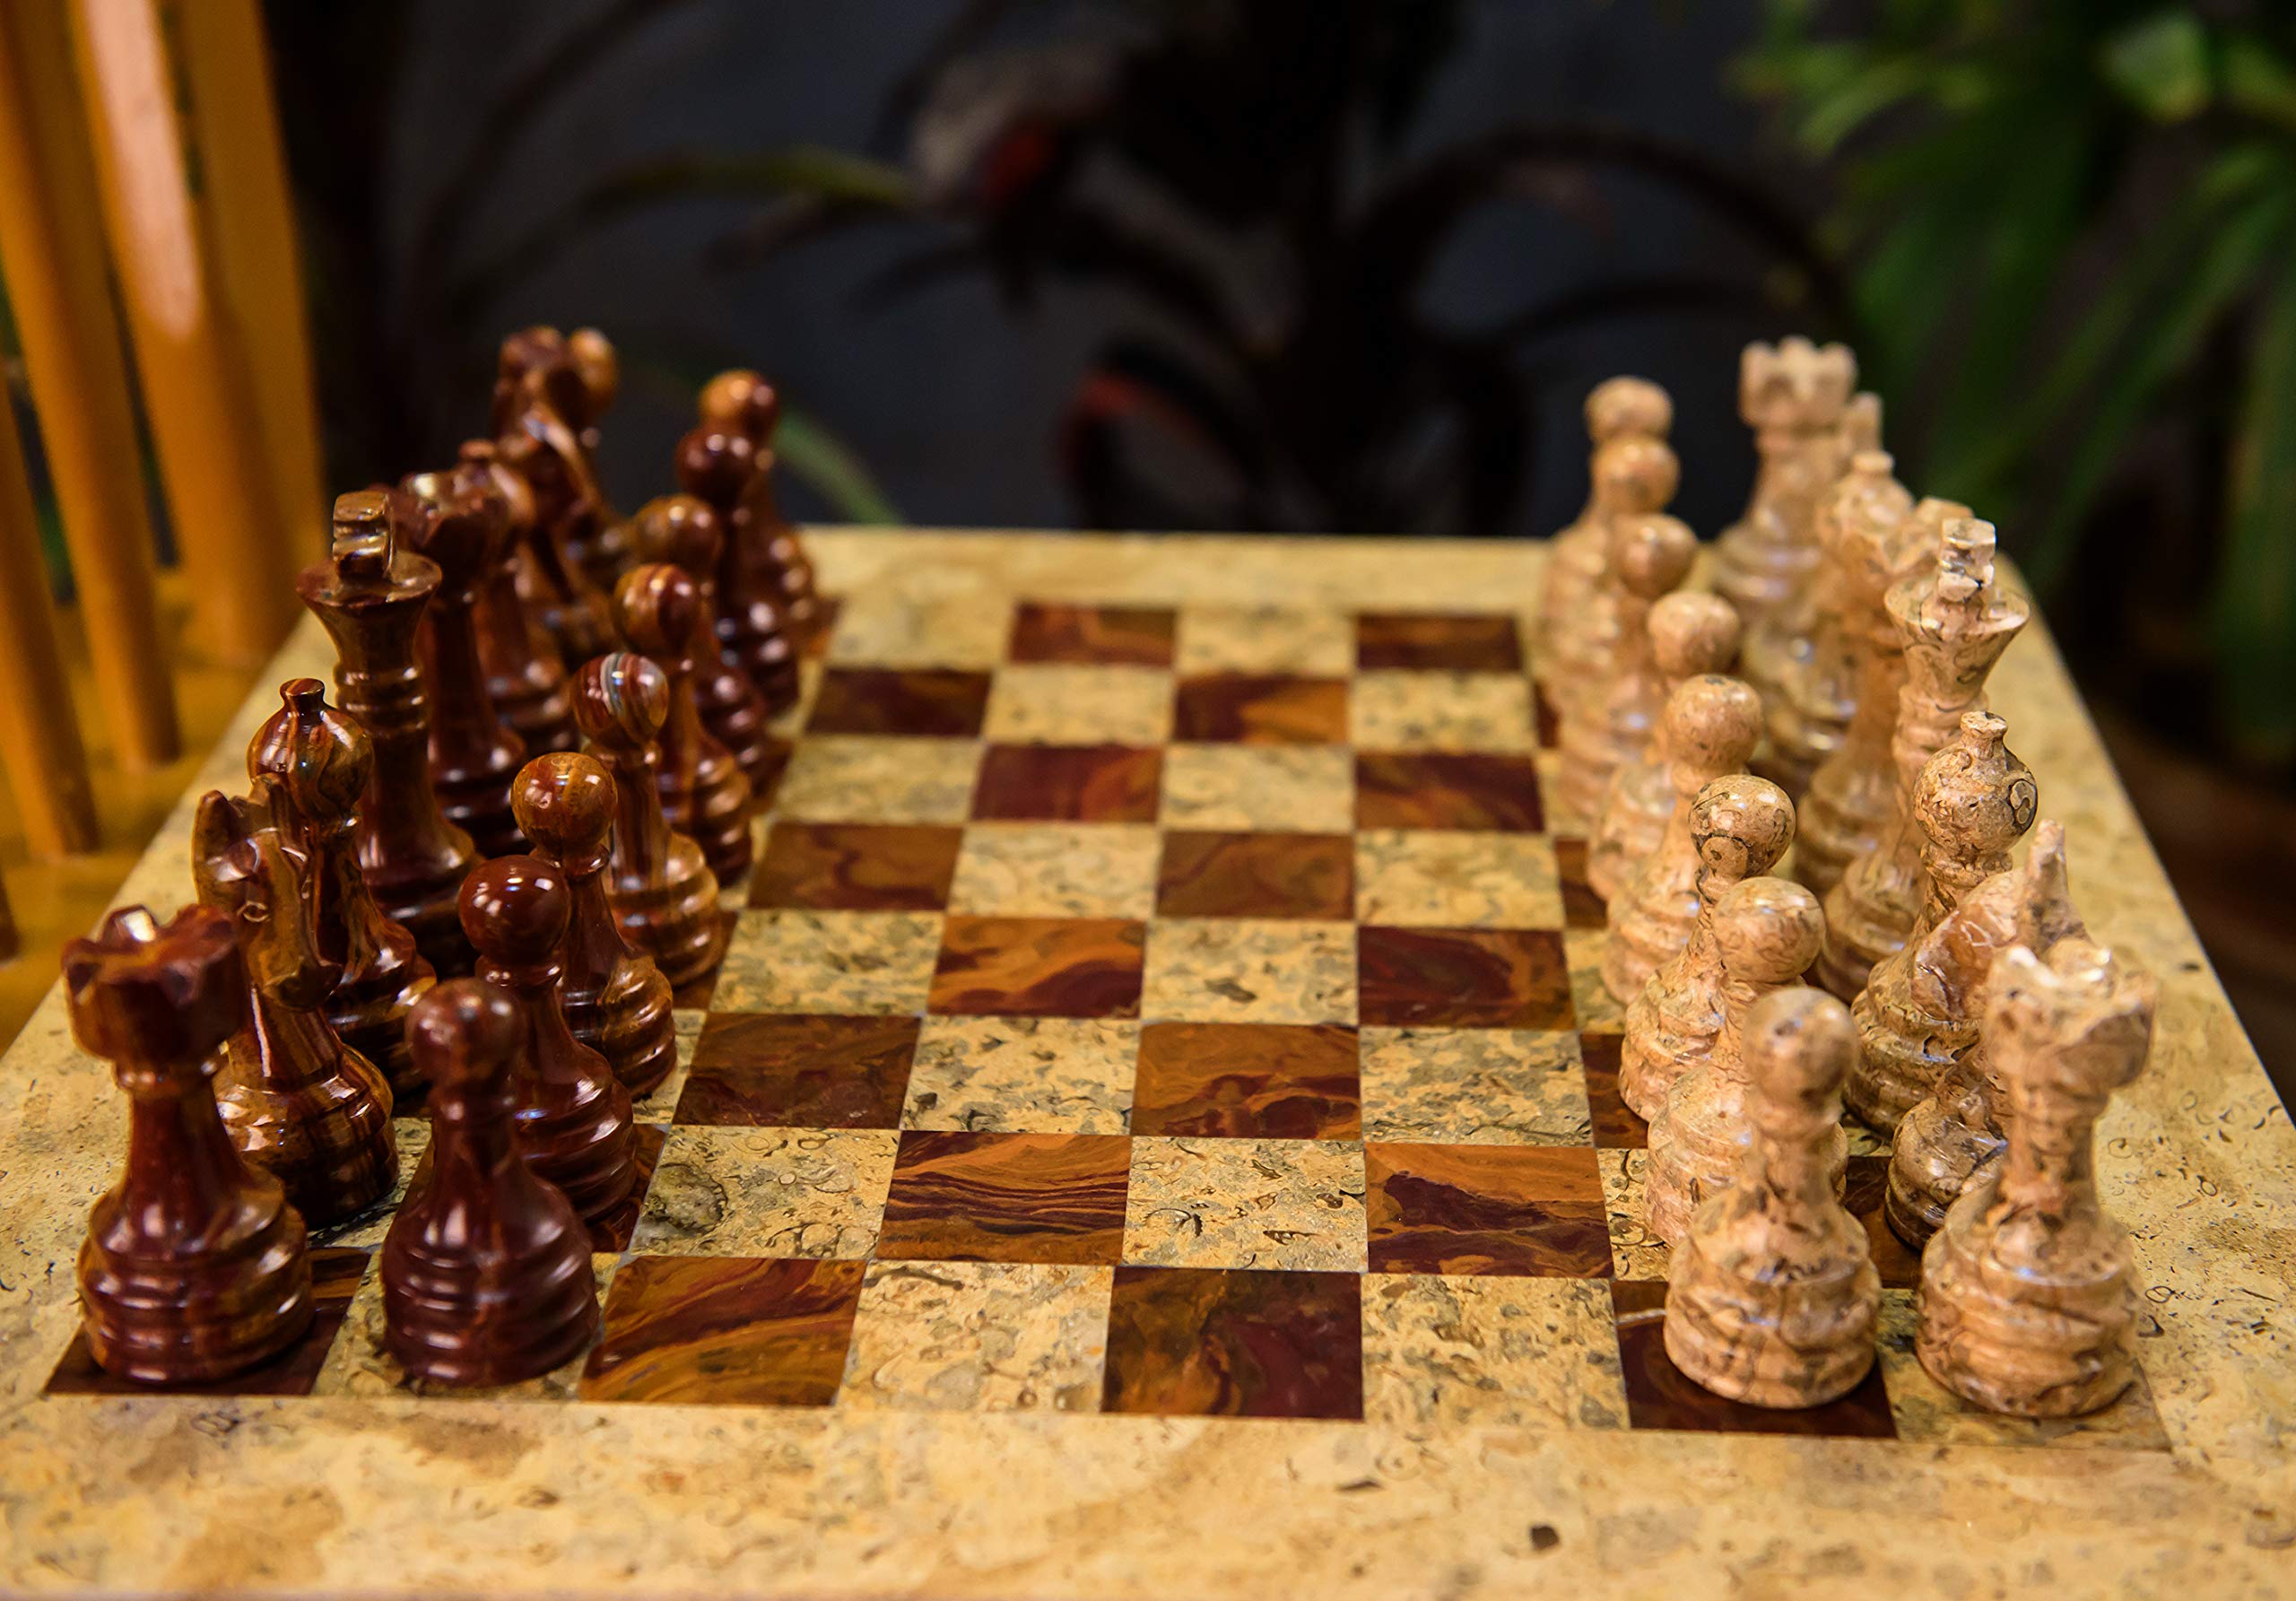 ラージサイズ チェス 大きめ チェスセット 15 Inches Dark and Light Brown Weighted Chess Set  Unique with 32 Pieces Large Marble Ideal for Home D?cor Best Tournament  decor Gifts 最新最全の